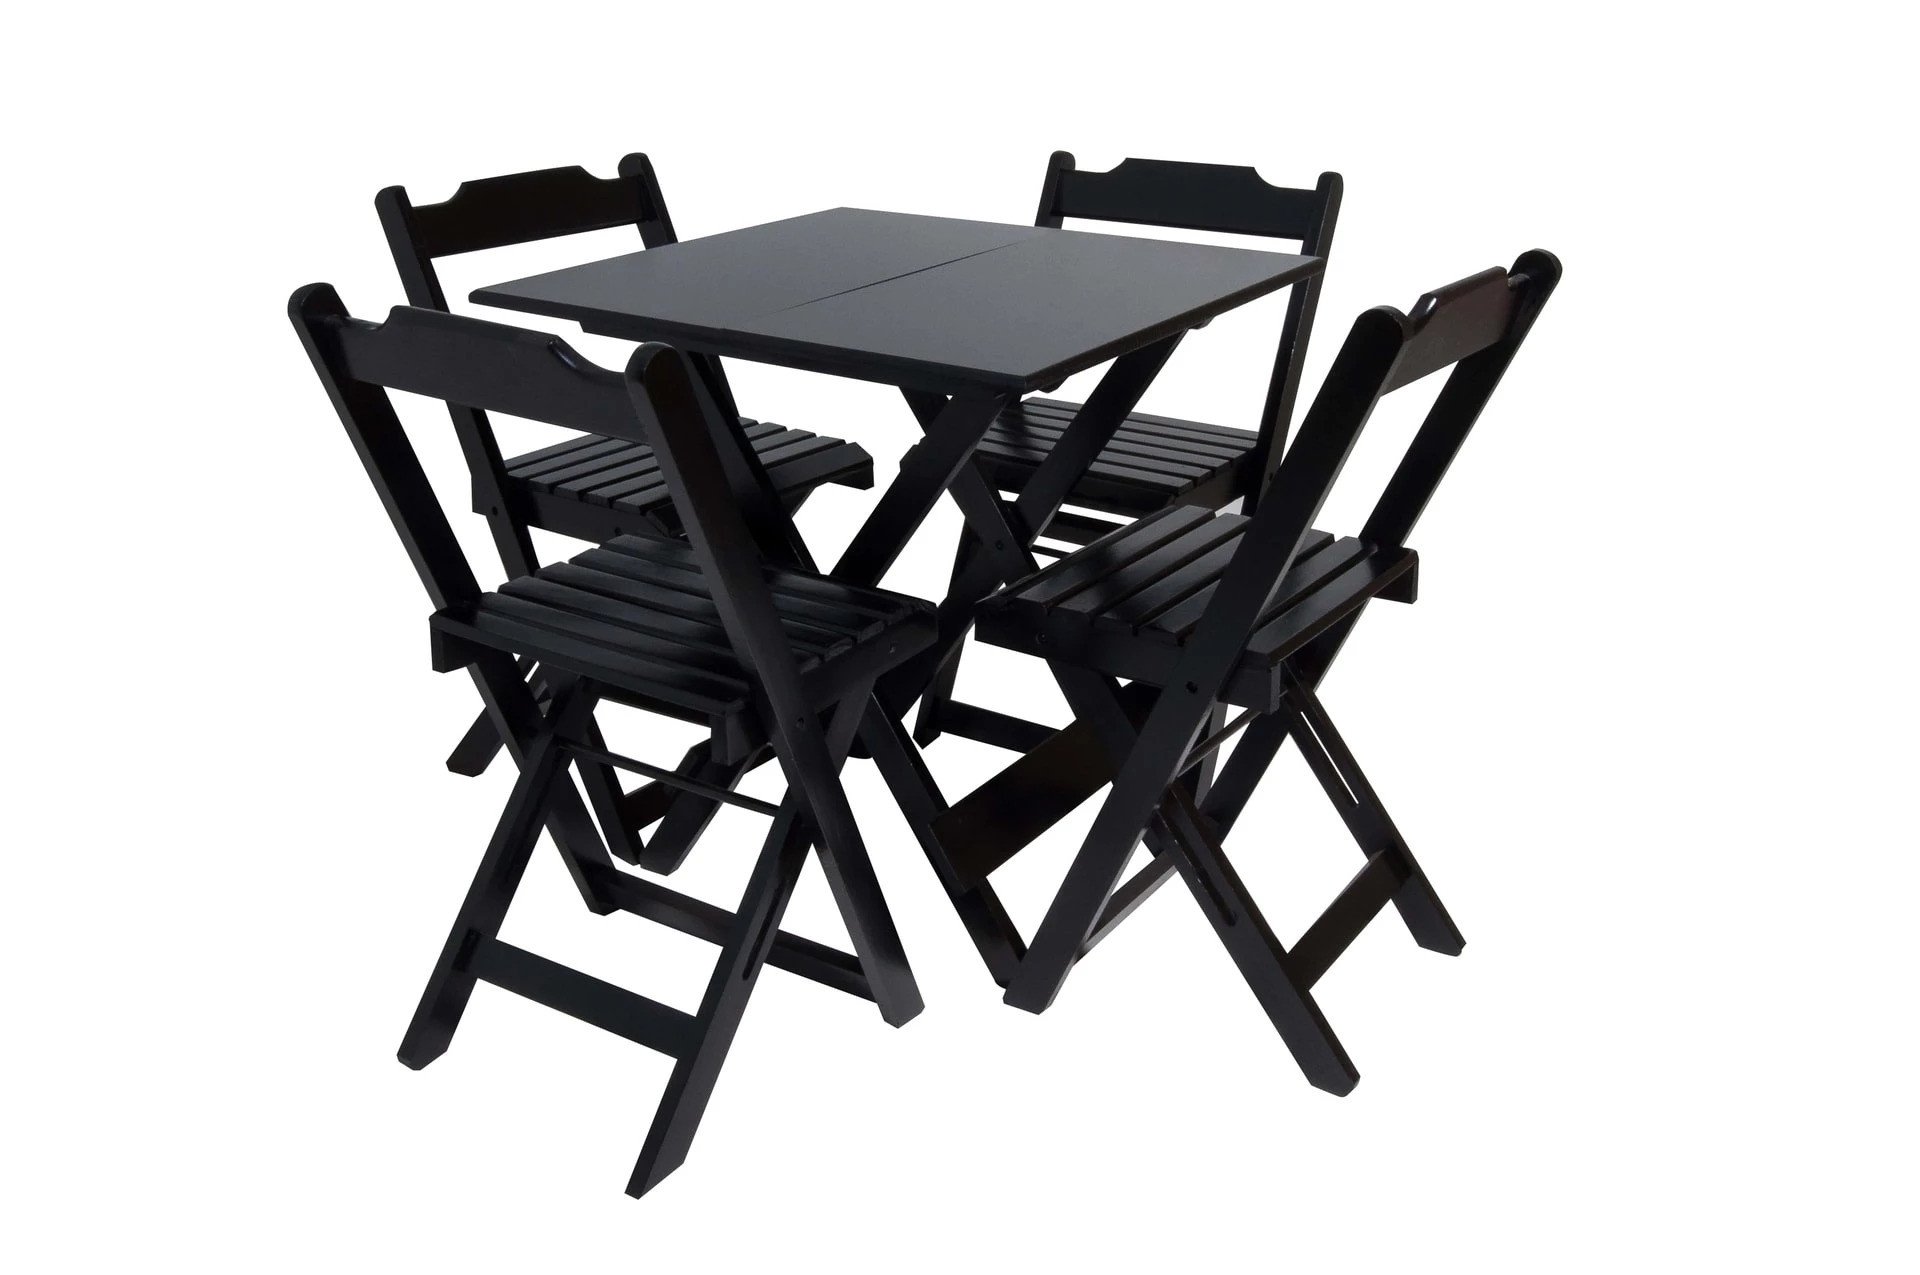 Kit com 4 Conjuntos de Jogo de Mesa 70x70 Com 4 Cadeiras Dobráveis - DG Móveis:Preto - 2